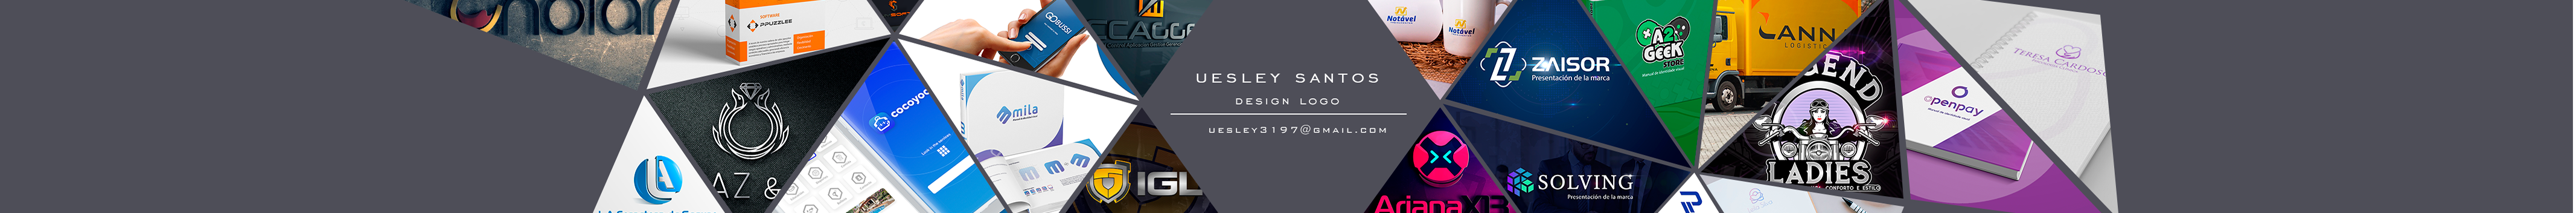 Profil-Banner von Uesley Melo dos Santos